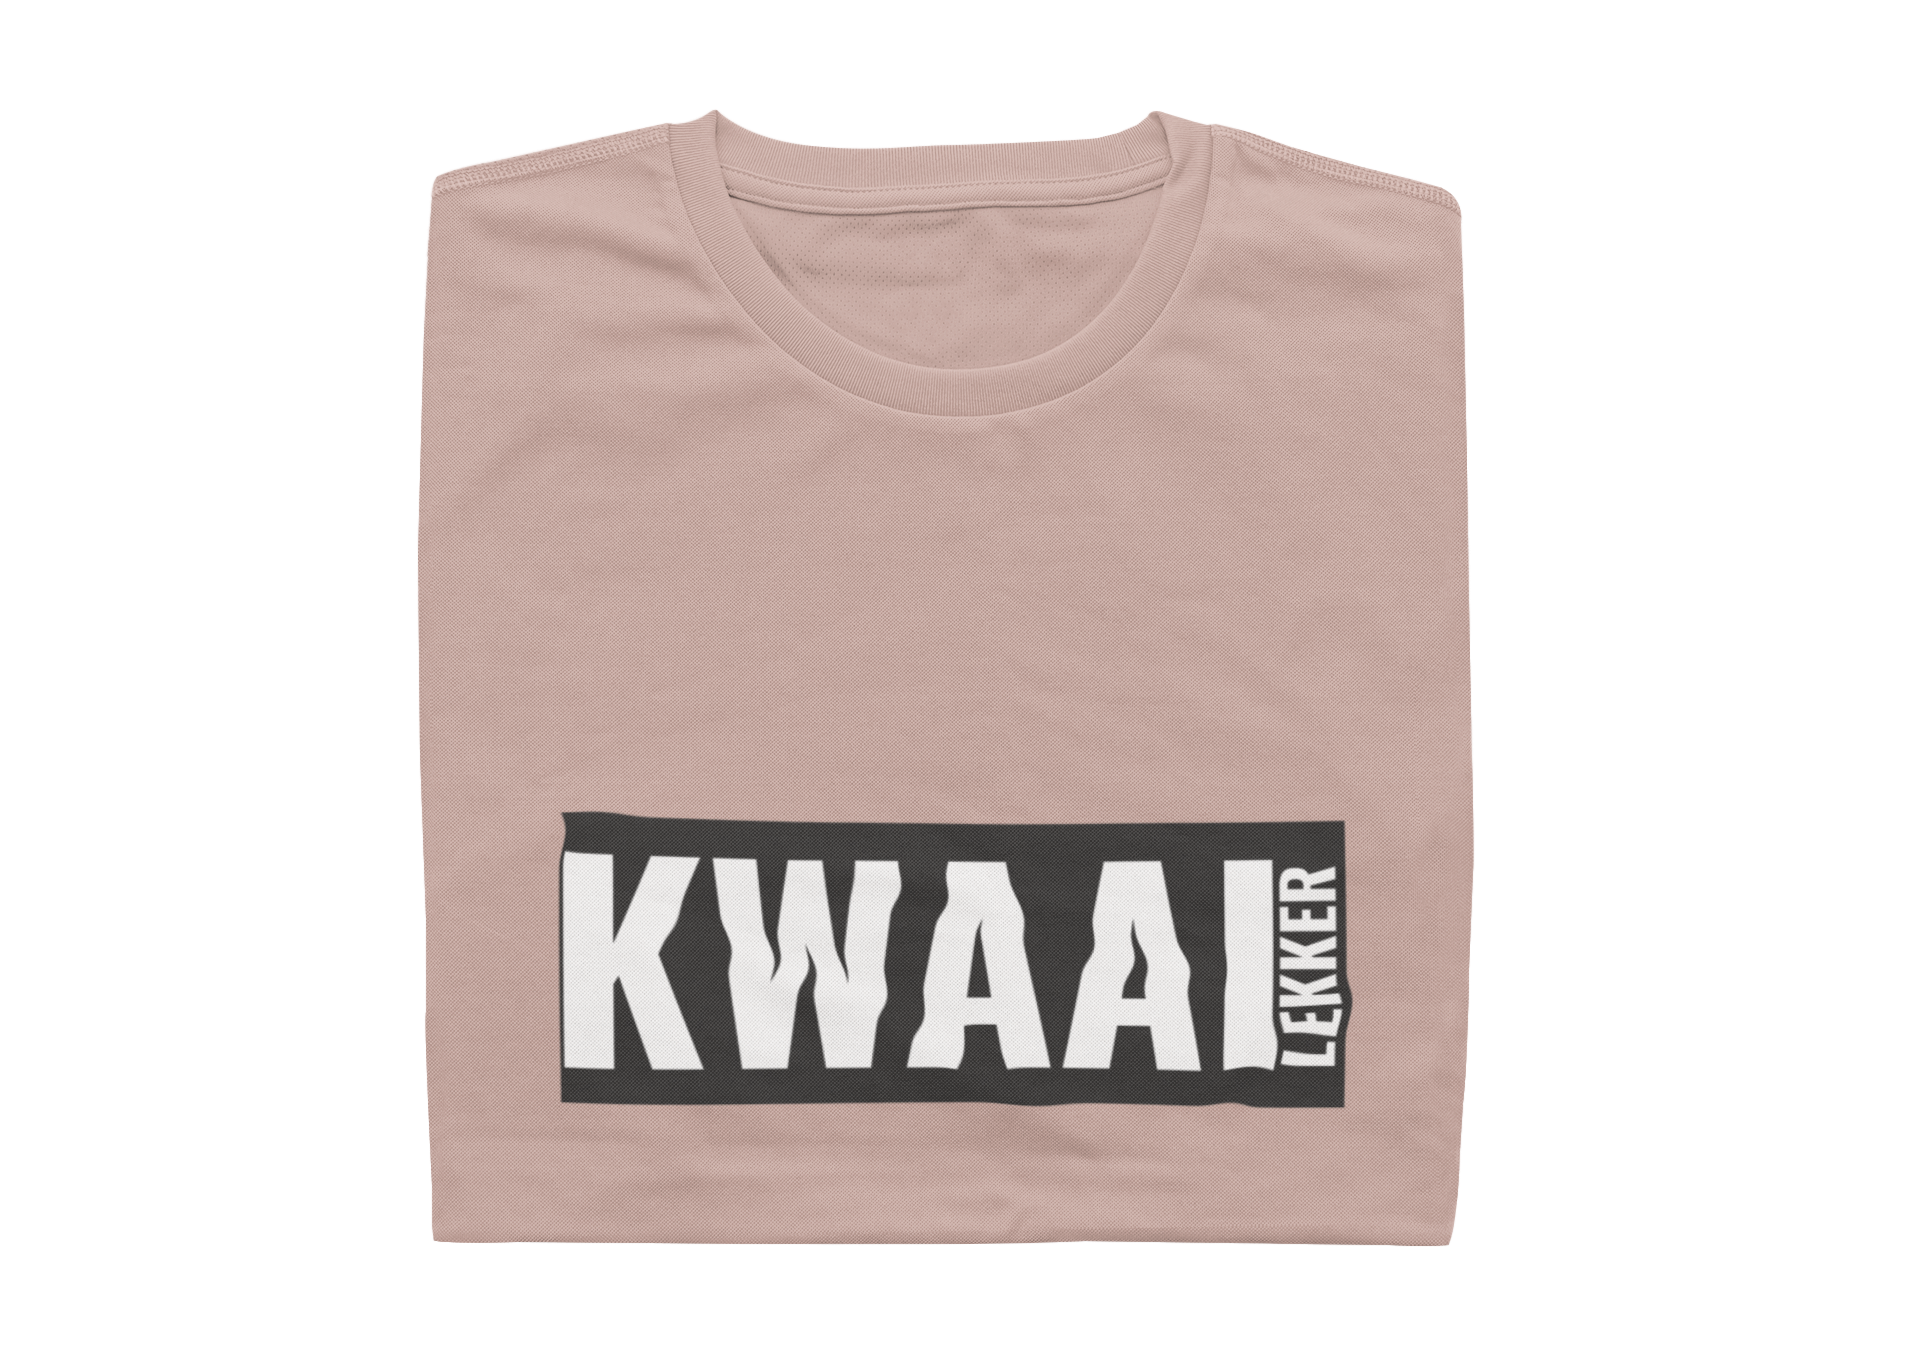 Kwaai Lekker - Ladies Shirt